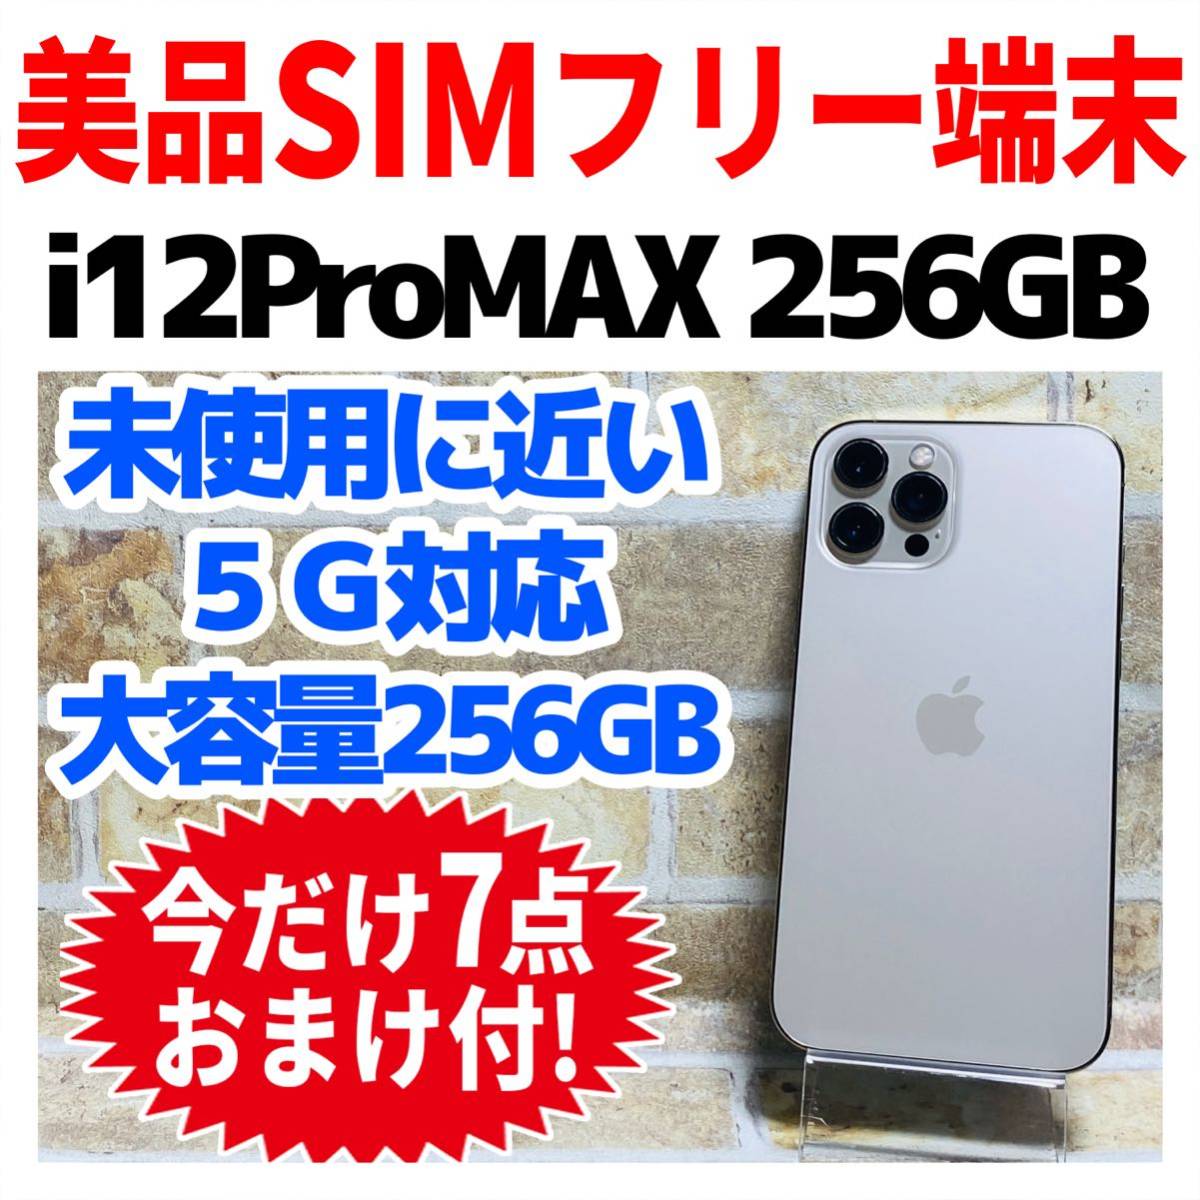 美品 SIMフリー iPhone12ProMAX 256GB 635 ゴールド 電池良好 スマホ